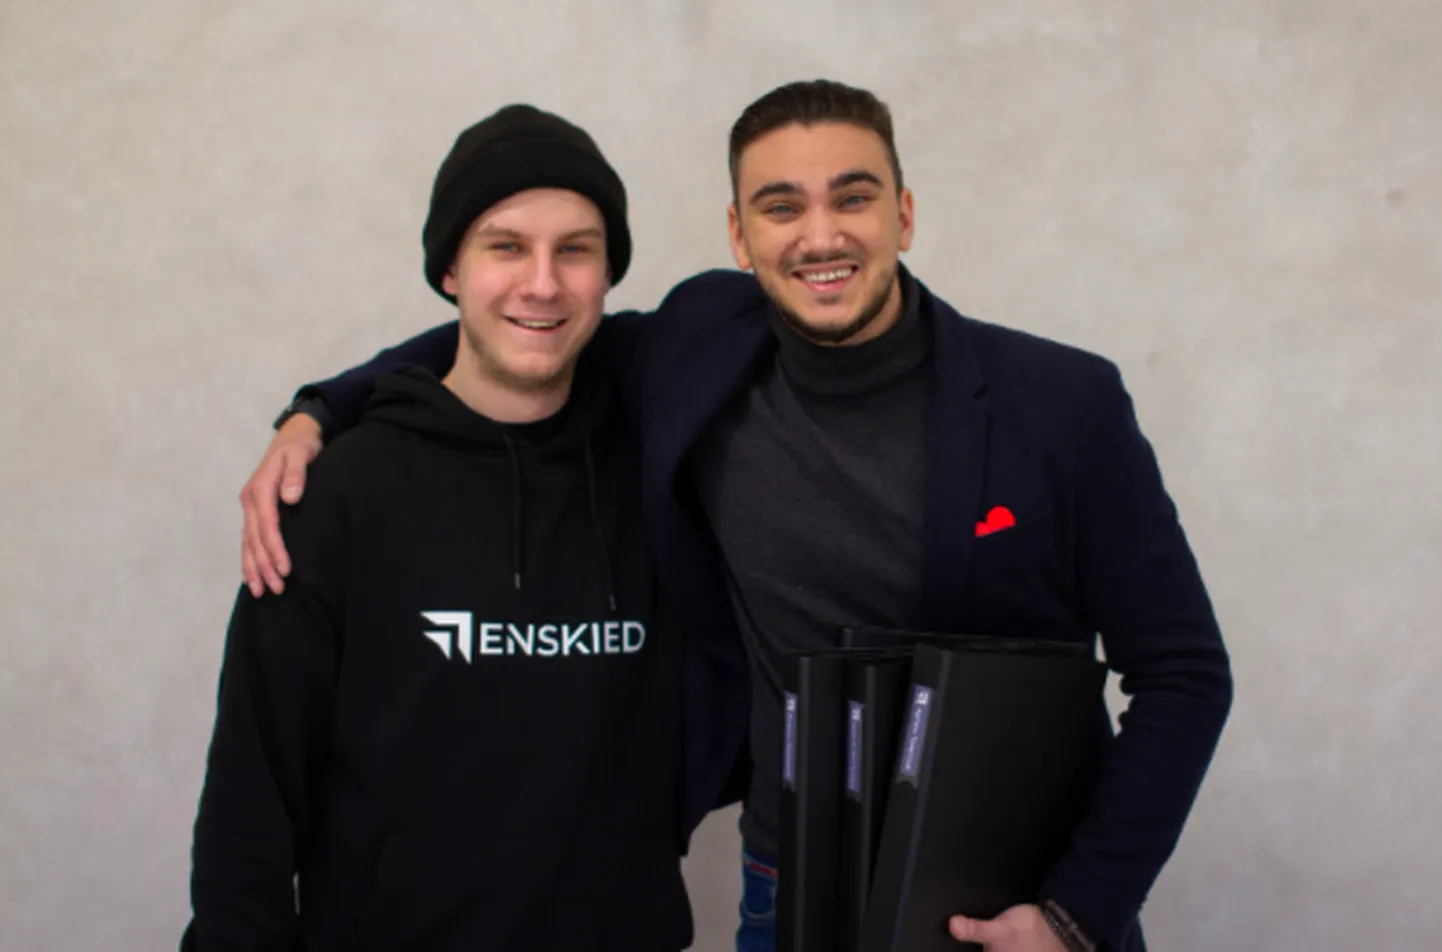 Егор Карасёв и Владимир Орава — члены команды организаторов бизнес-инкубатора ENSKIED.